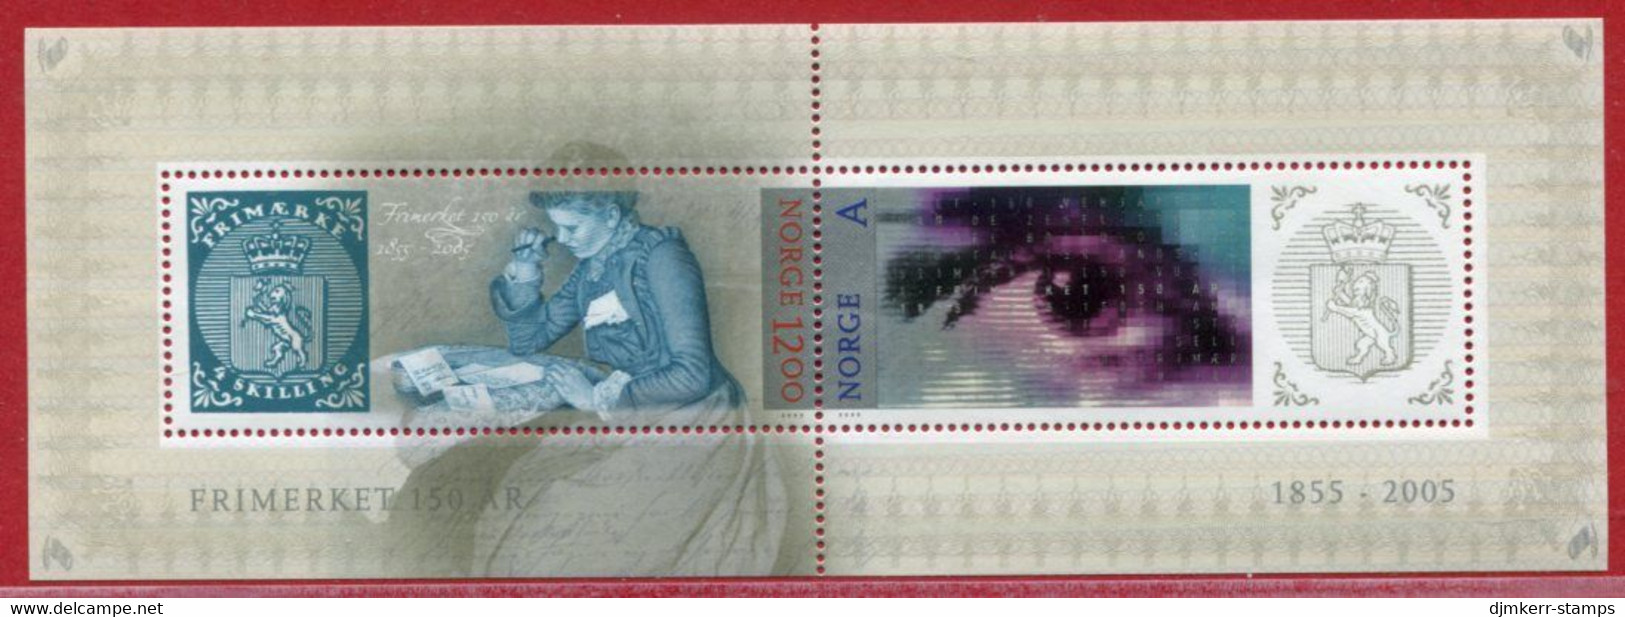 NORWAY 2005 Norwegian Stamp Anniversary Block MNH / **.  Michel  Block 29 - Neufs